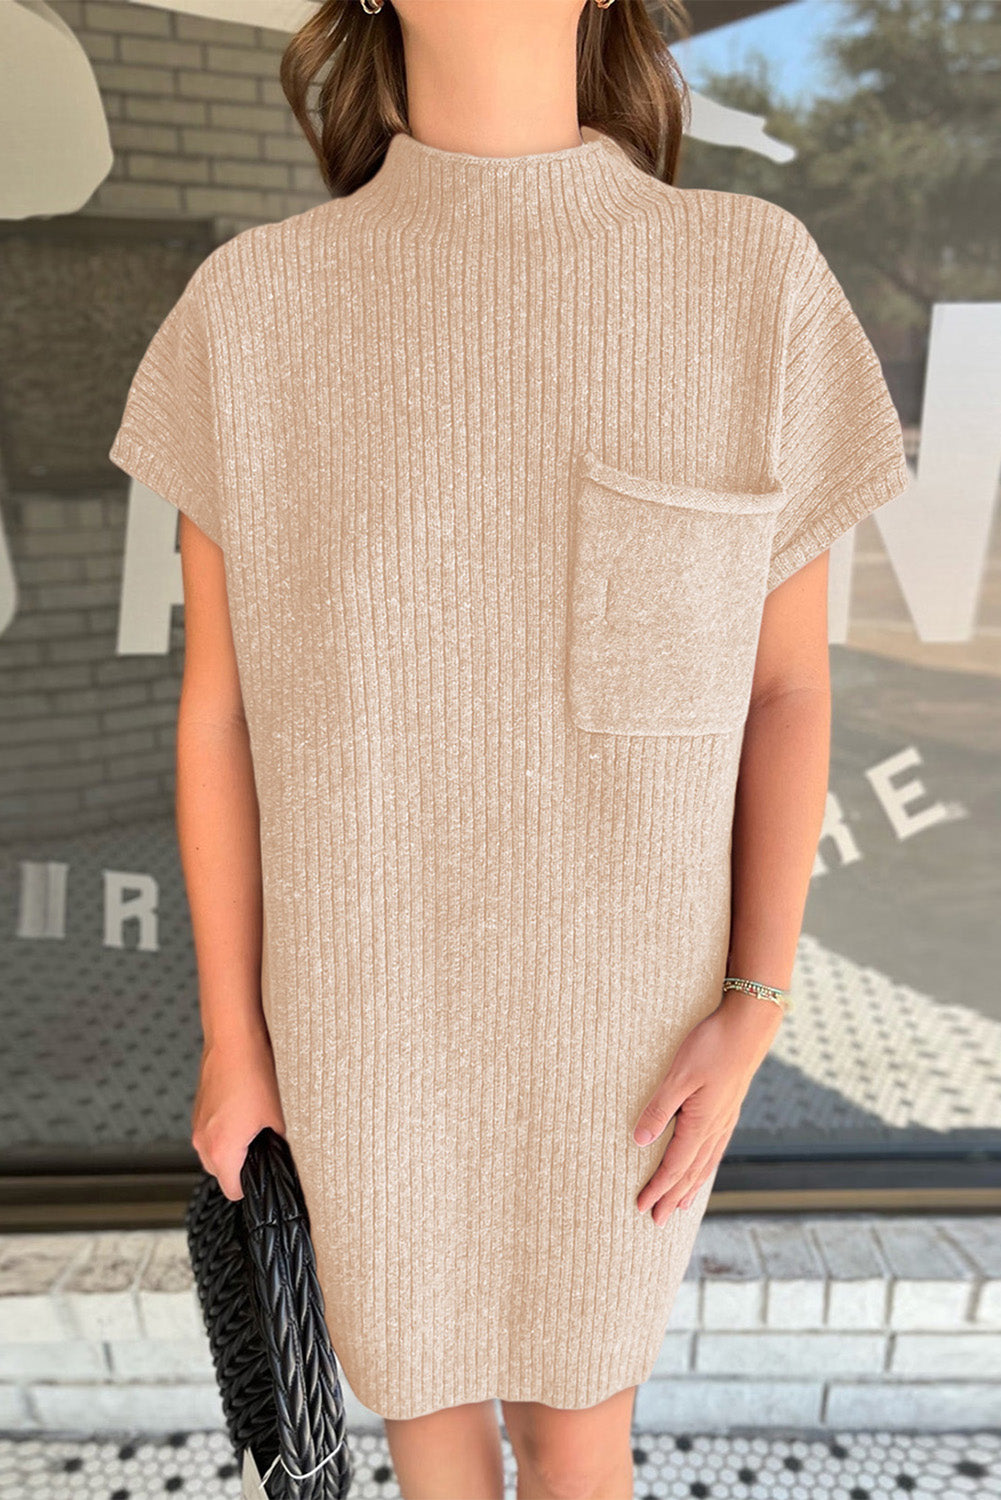 Haferflockenfarbenes Pulloverkleid aus geripptem Strick mit aufgesetzten Taschen und kurzen Ärmeln